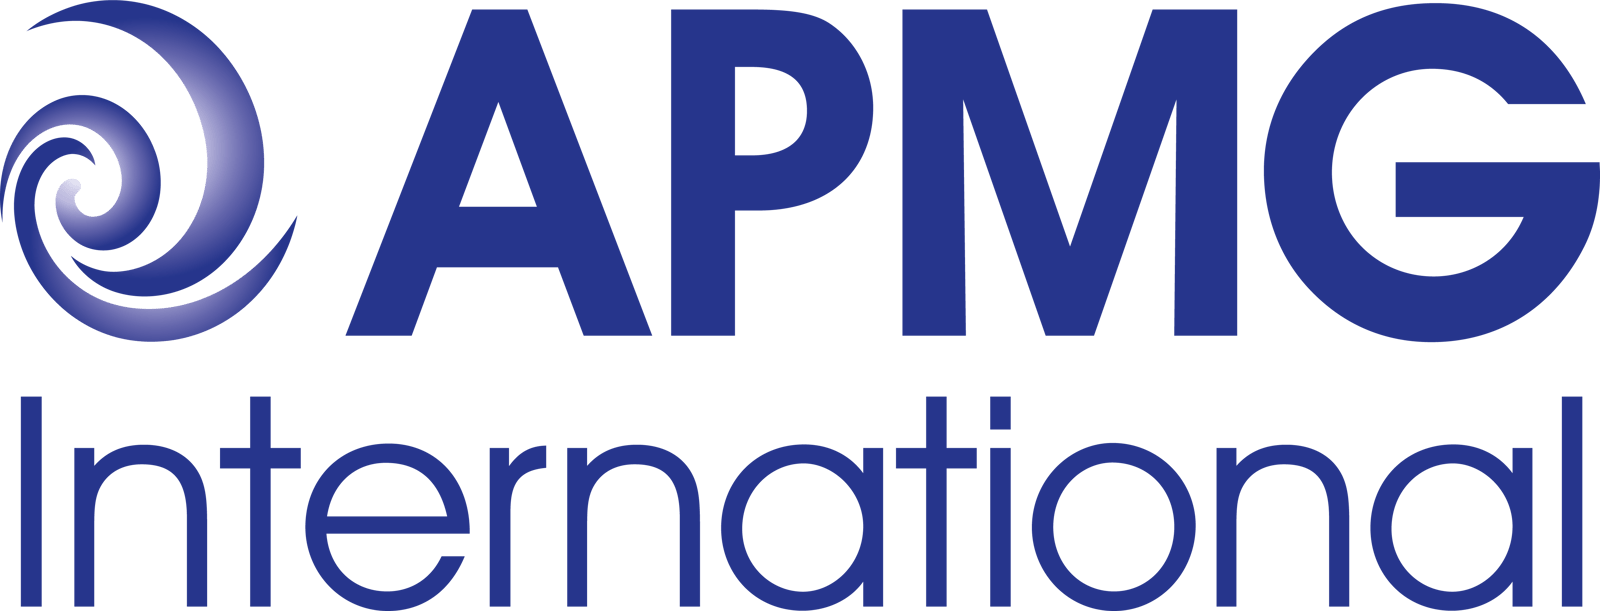 apmg-international-logo-stacked.png